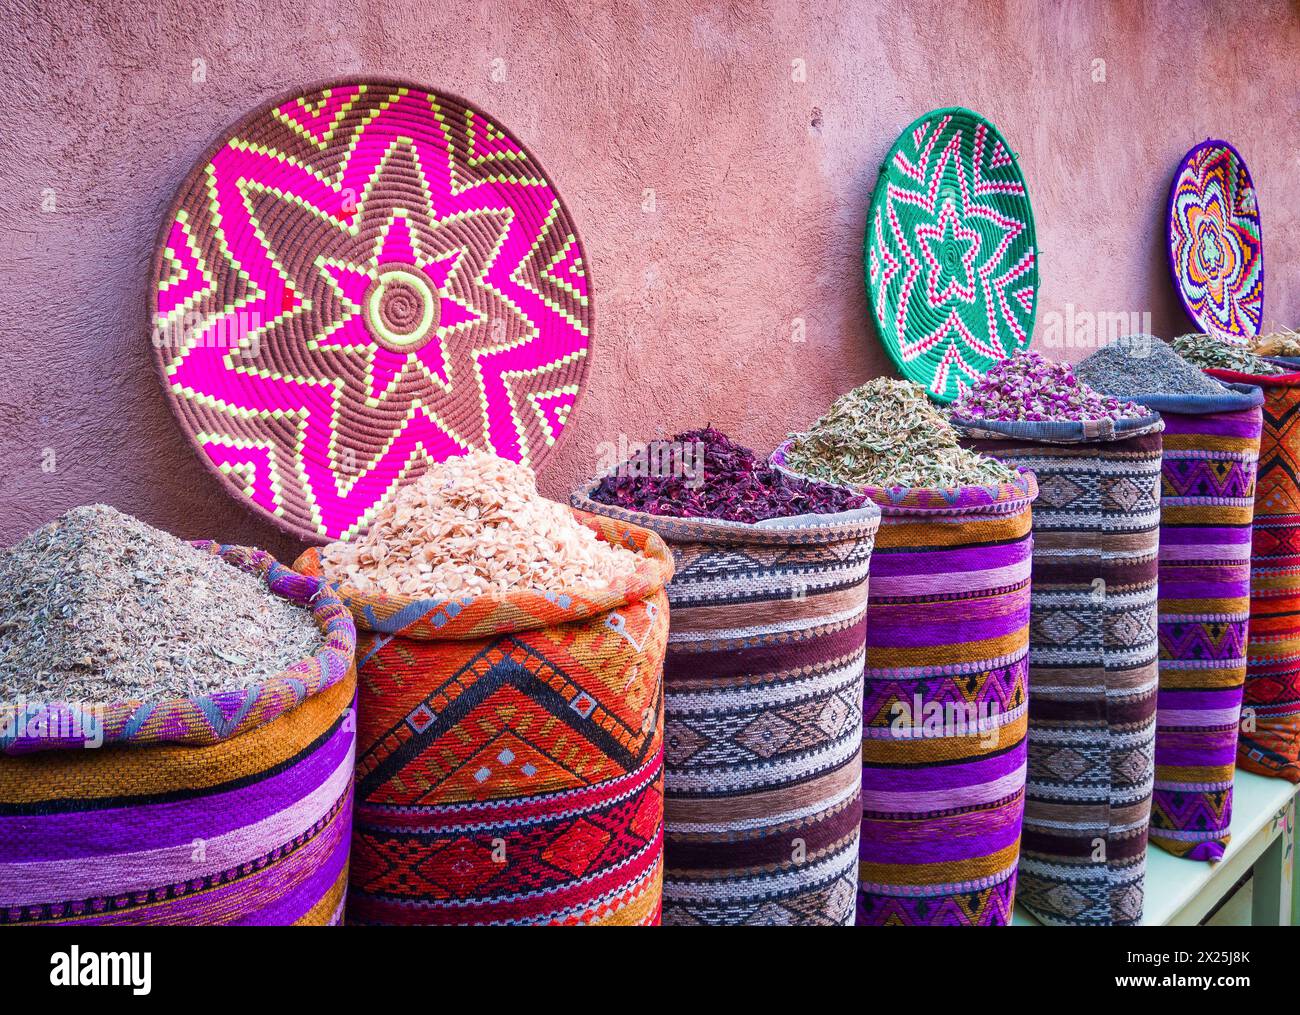 Marrakesch, Marokko. Farbenfrohe Gewürze und Farbstoffe auf dem Souk-Markt Stockfoto